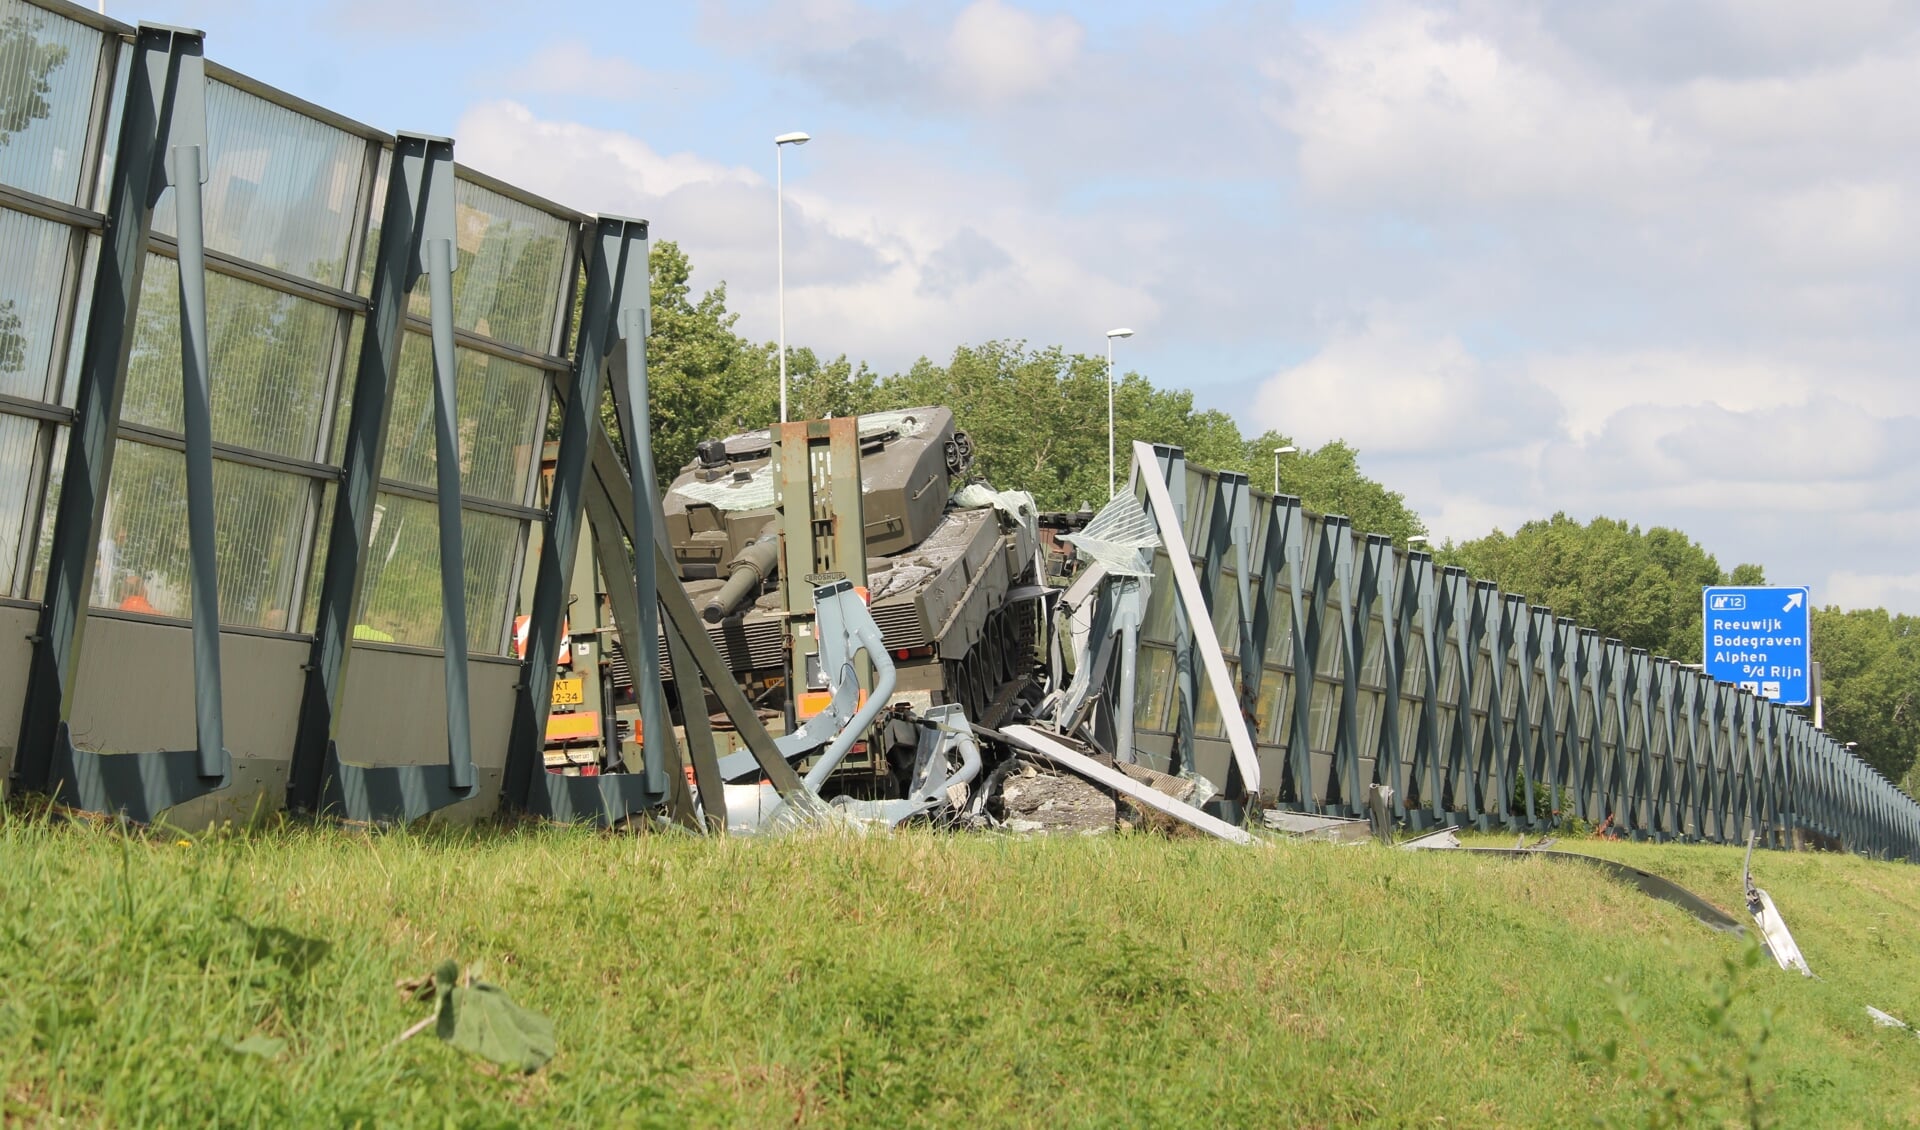 Geluidswal bij Reeuwijk doorboord door legertank op oplegger. Beeld: AS Media